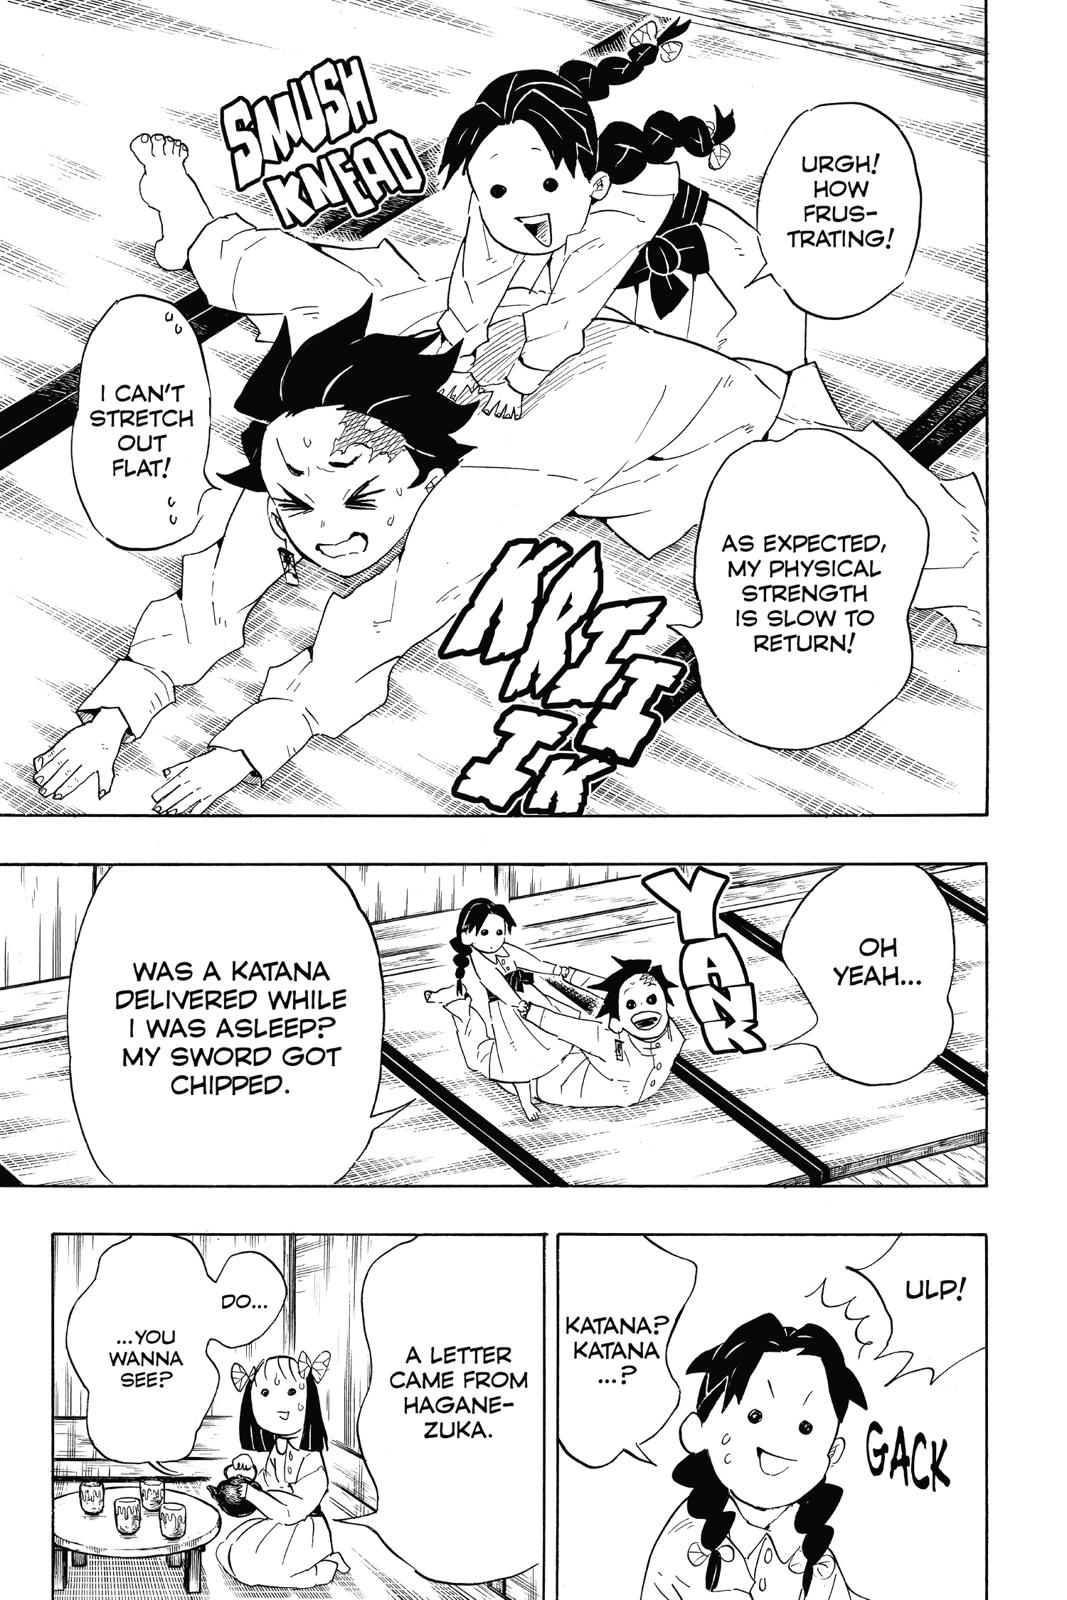 Demon Slayer Manga Manga Chapter - 100 - image 13